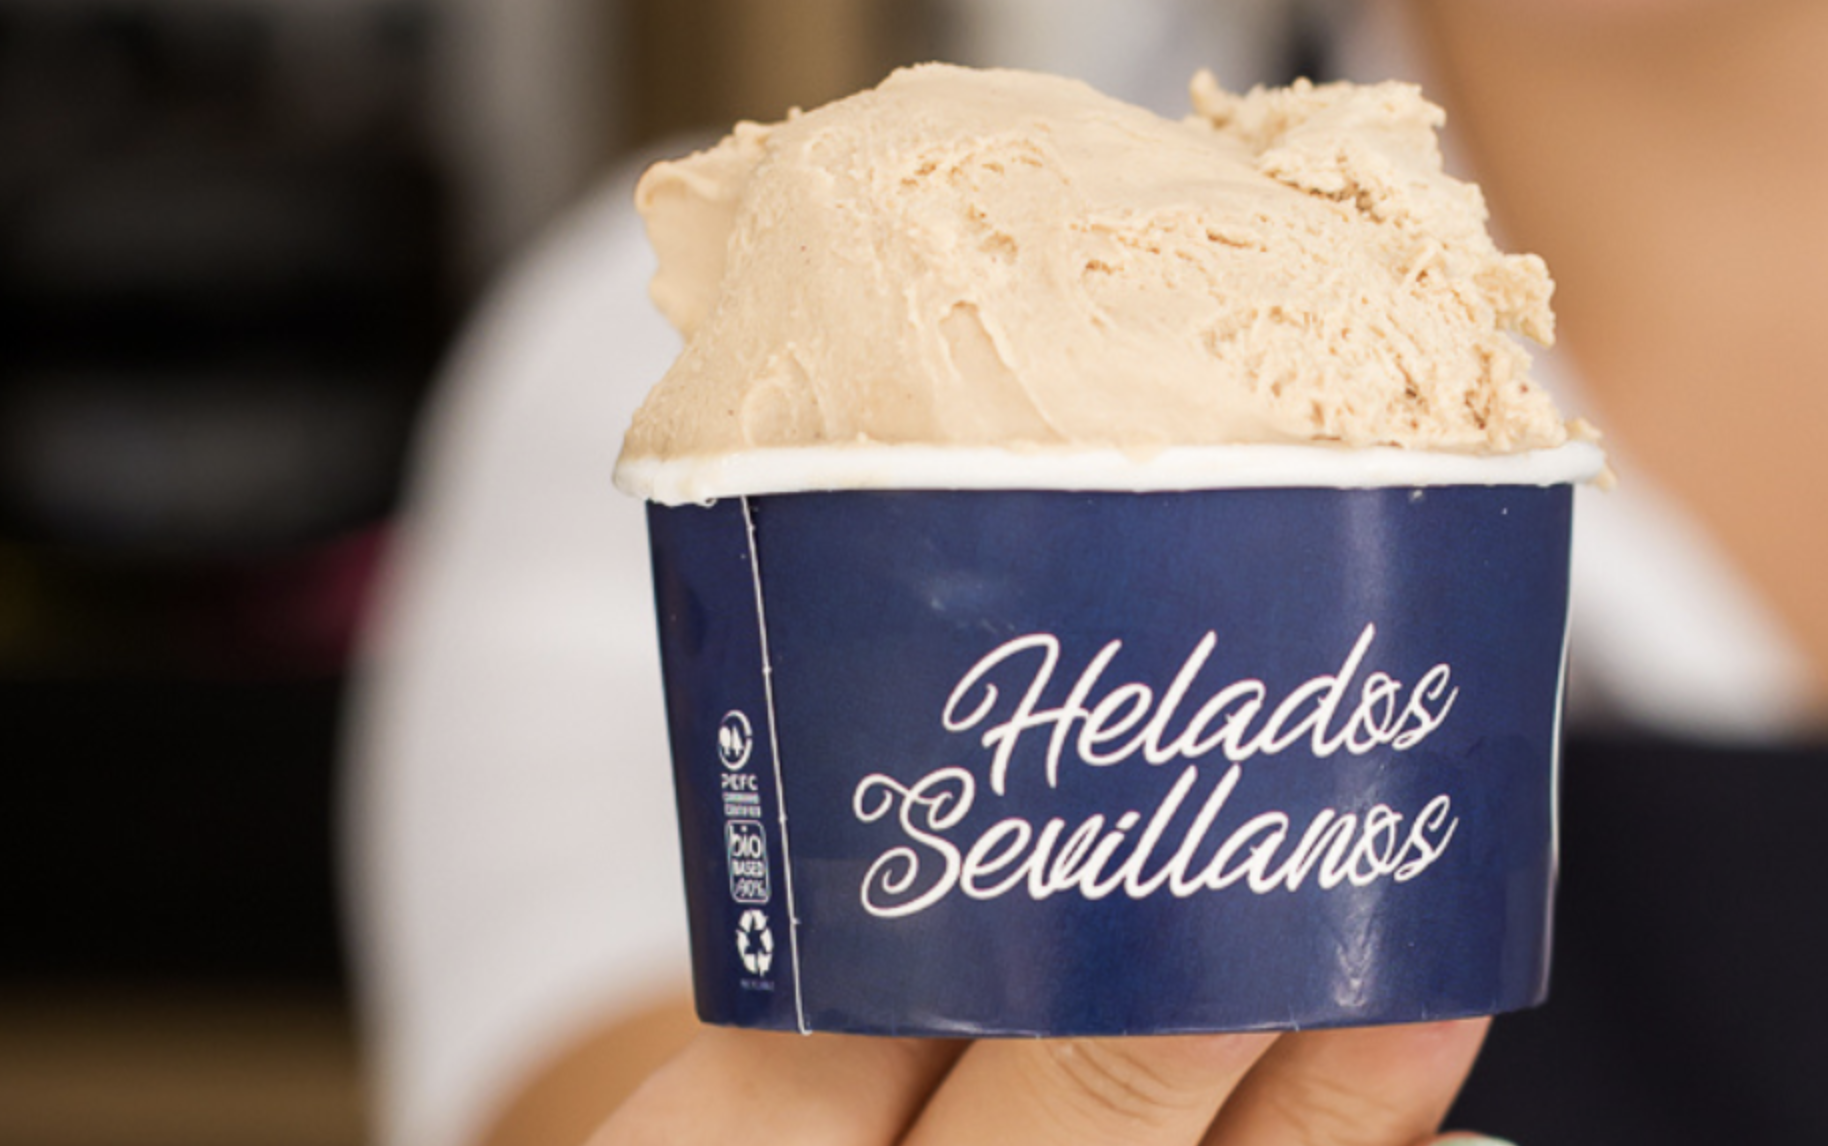 Un local de Sevilla se inventa un helado cofrade para Semana Santa.